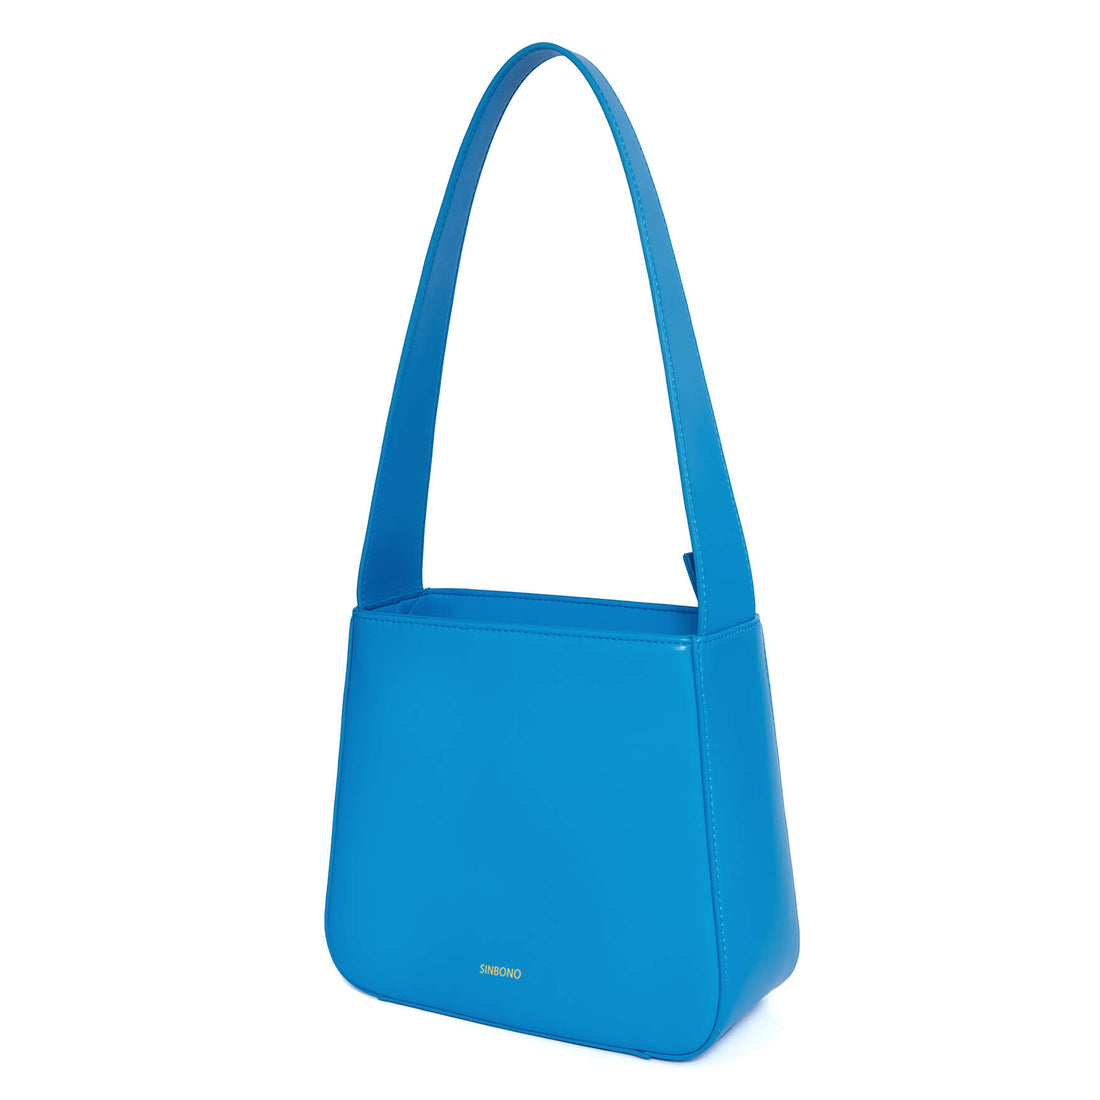 SINBONO Betty Shoulder Bag Lake Blue - Top Leather Shoulder Bag for Women